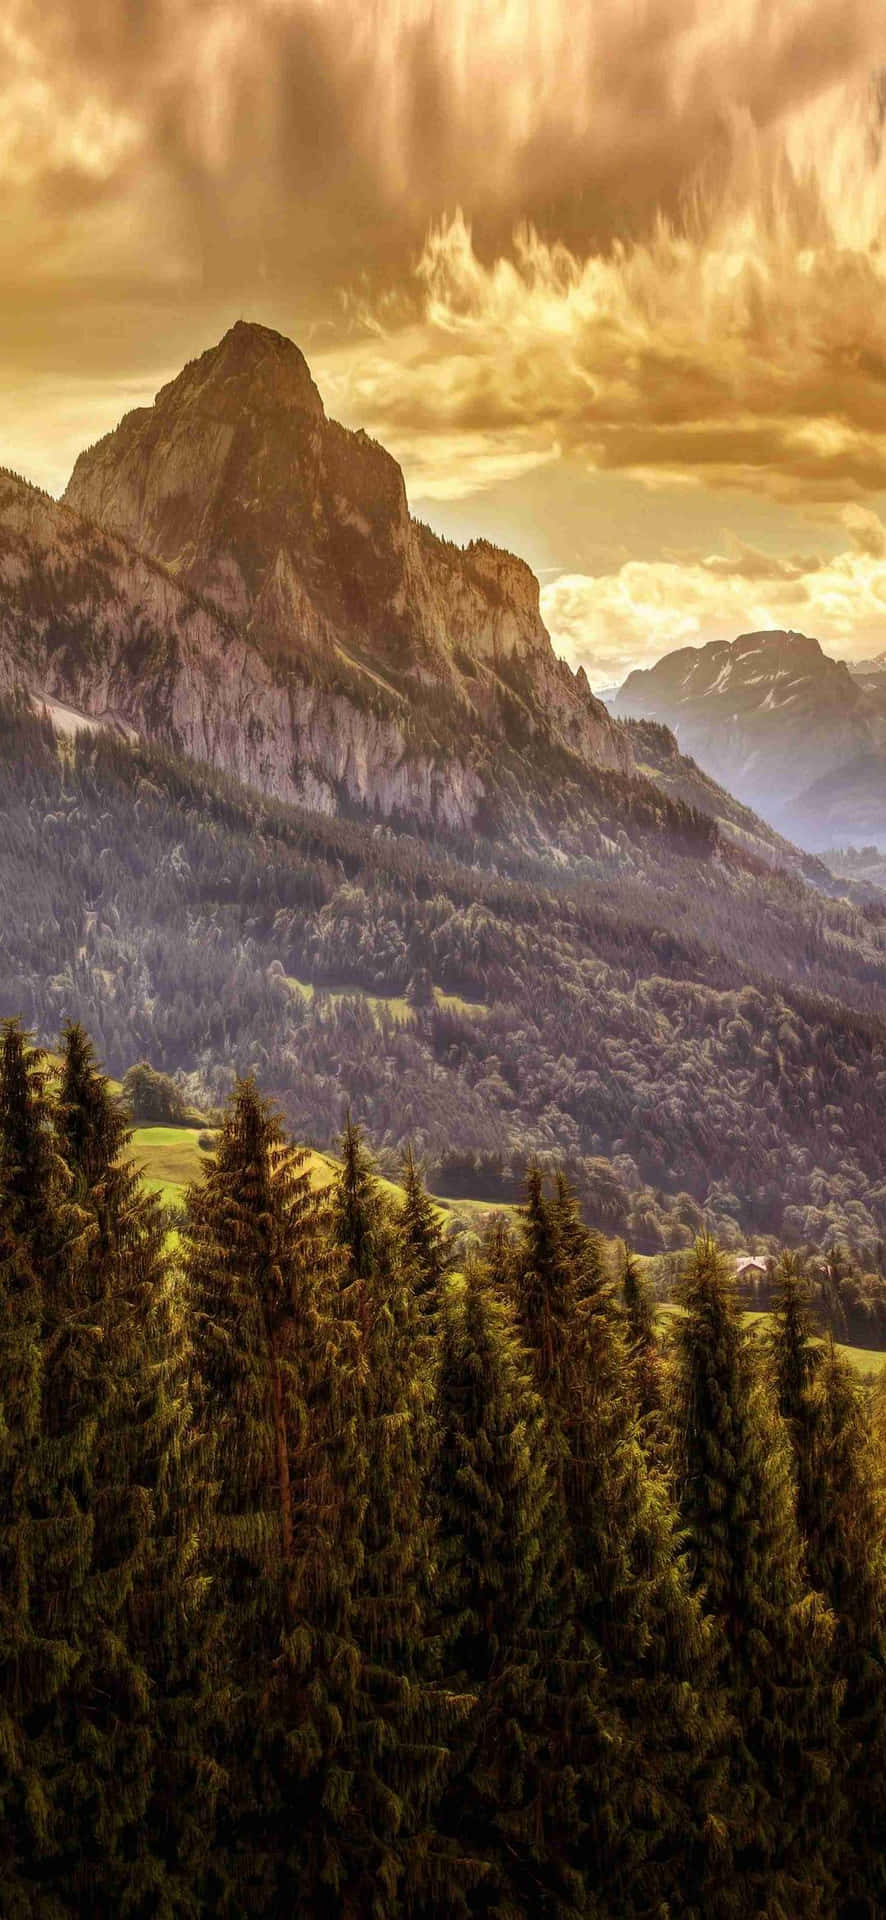 Golden Mountain Sunset Landscape Wallpaper